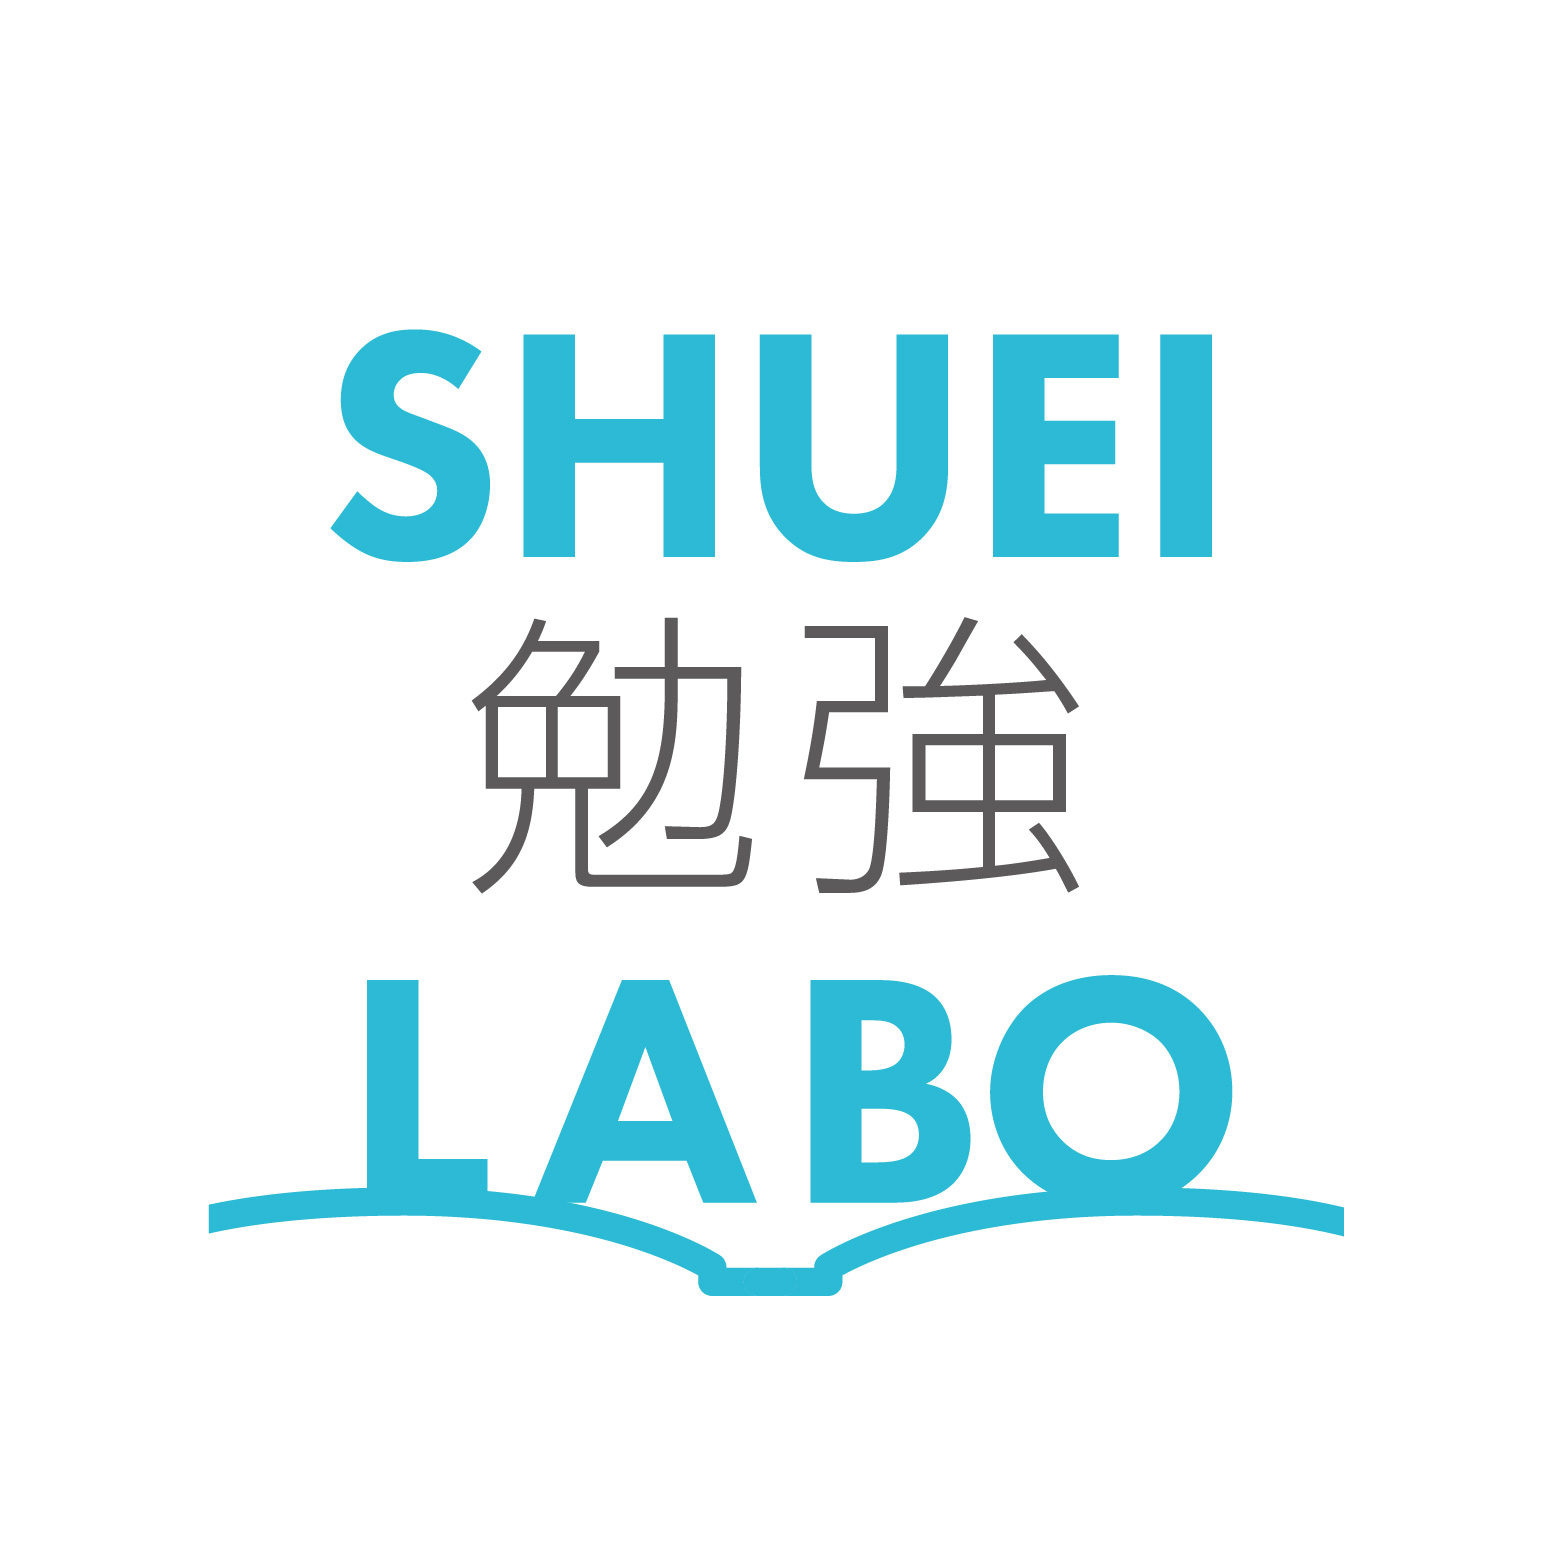 SHUEI勉強LABO